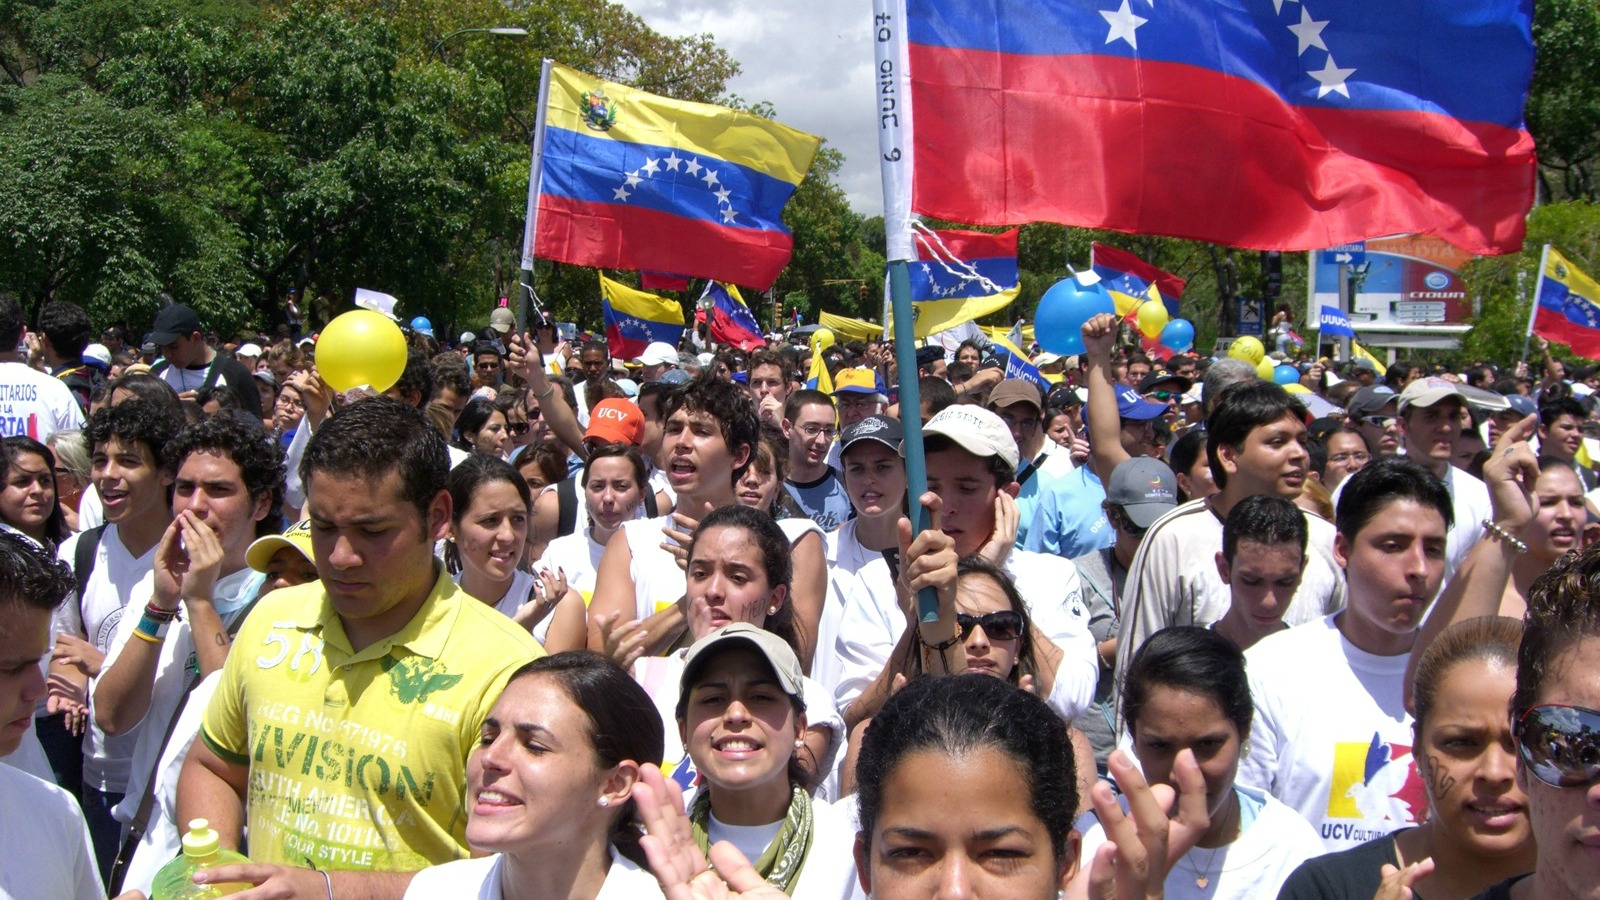 Au Venezuela, le Covid-19 risque d'aggraver une situation sociale, économique et politique déjà désespérée
| © AndresAZP/Flickr/CC BY-ND 2.0